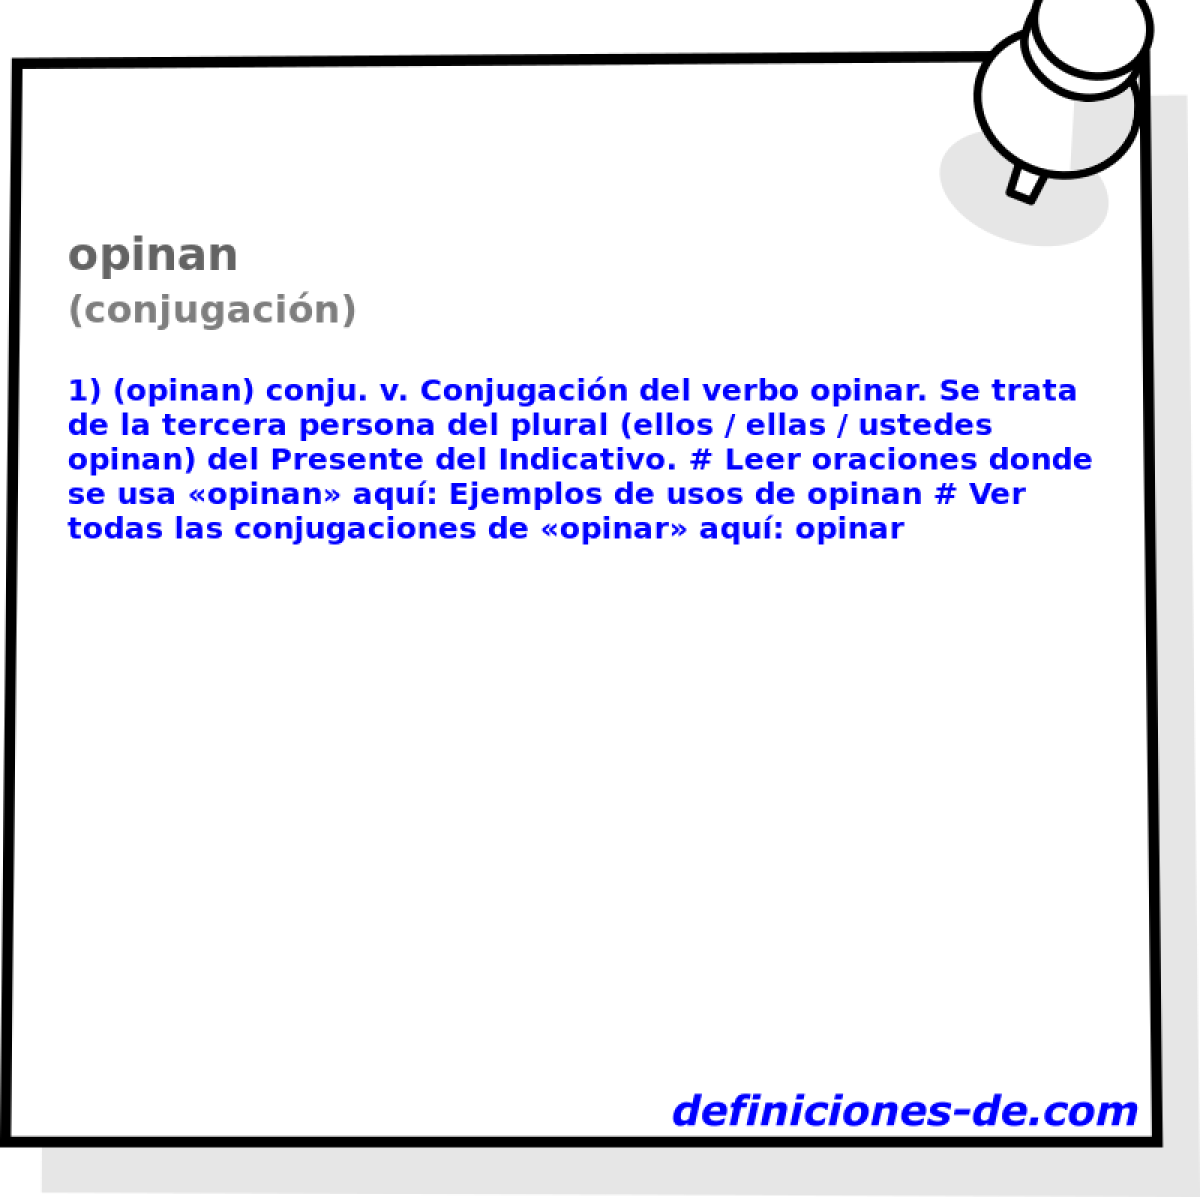 opinan (conjugacin)